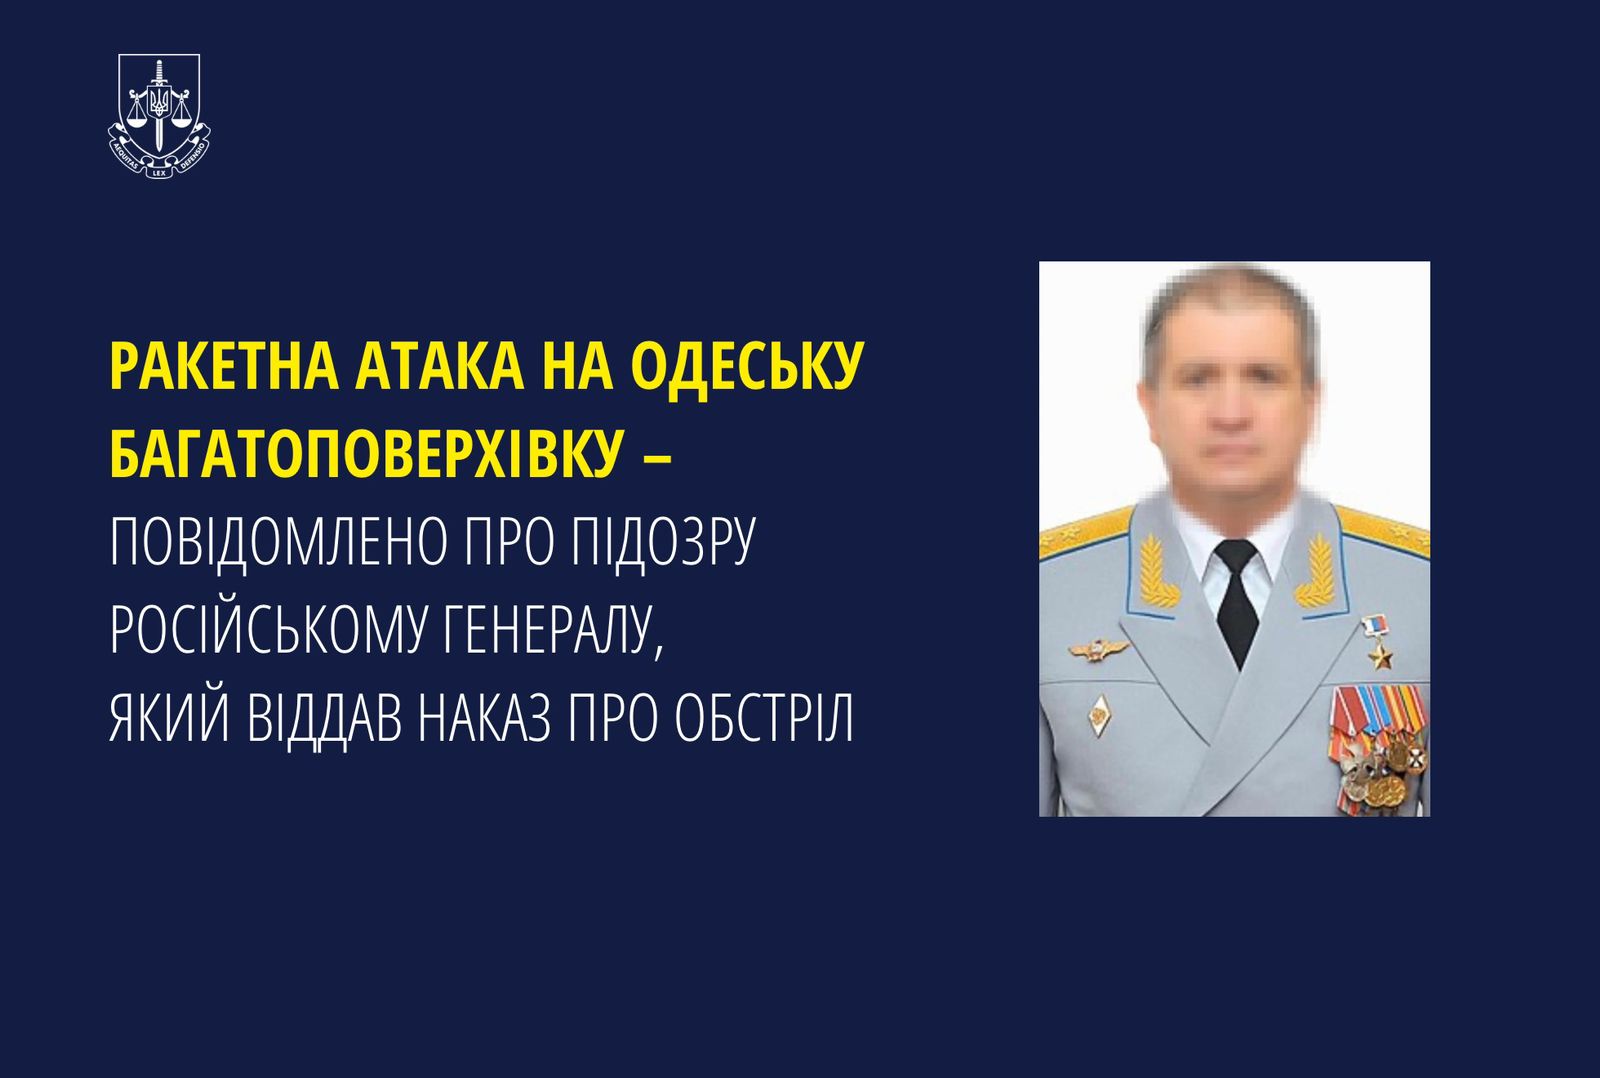 Ракетна атака на одеську багатоповерхівку – повідомлено про підозру російському генералу, який віддав наказ про обстріл